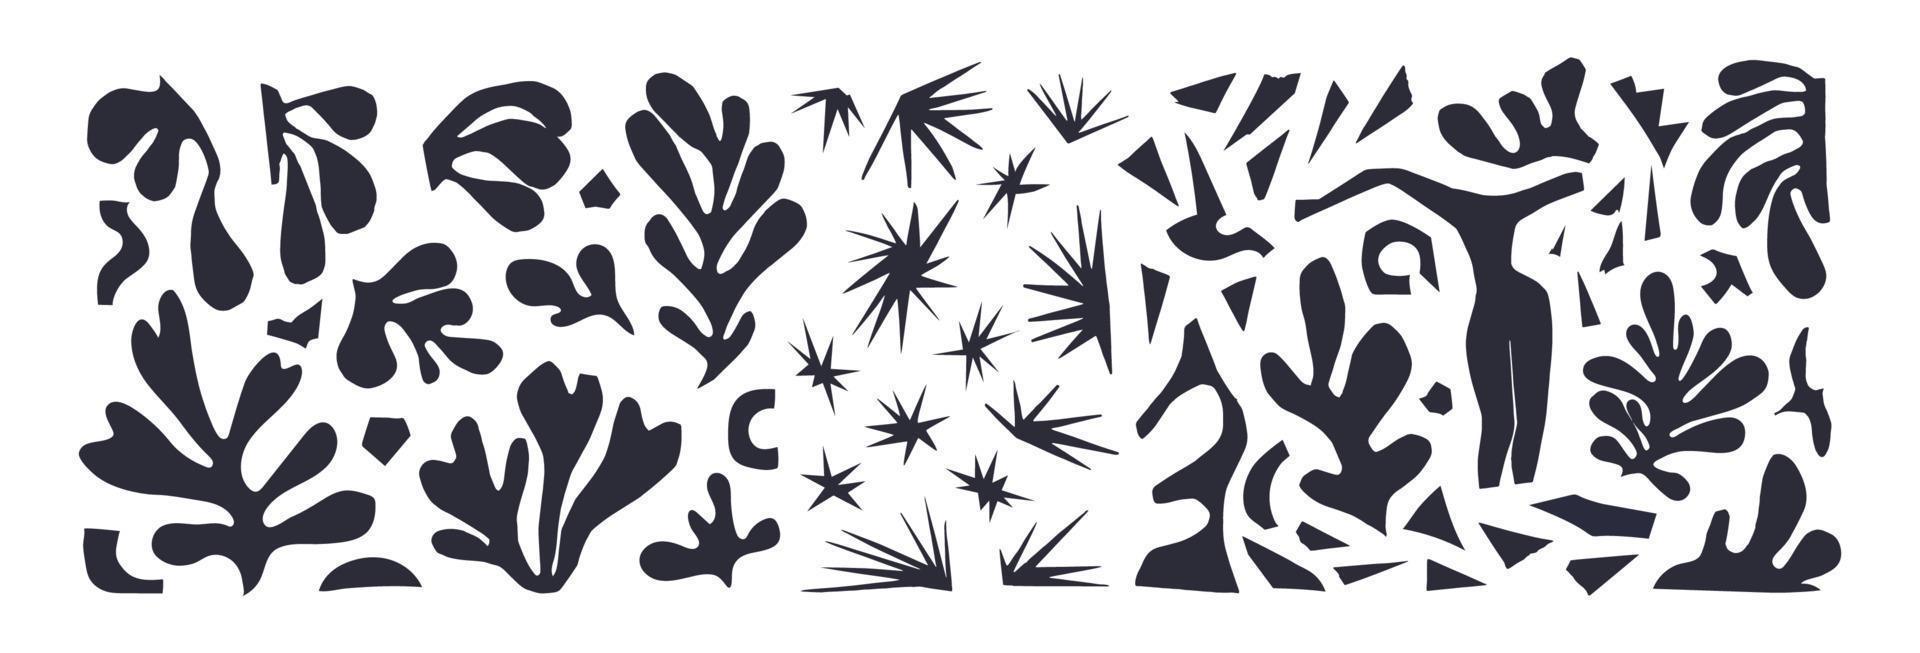 en uppsättning av abstrakt växter och annorlunda former inspirerad förbi matisse. vektor illustration svart på vit papper utskärningar isolerat på blå bakgrund. kvinna figur, stjärnor, alger skrot av skära papper.